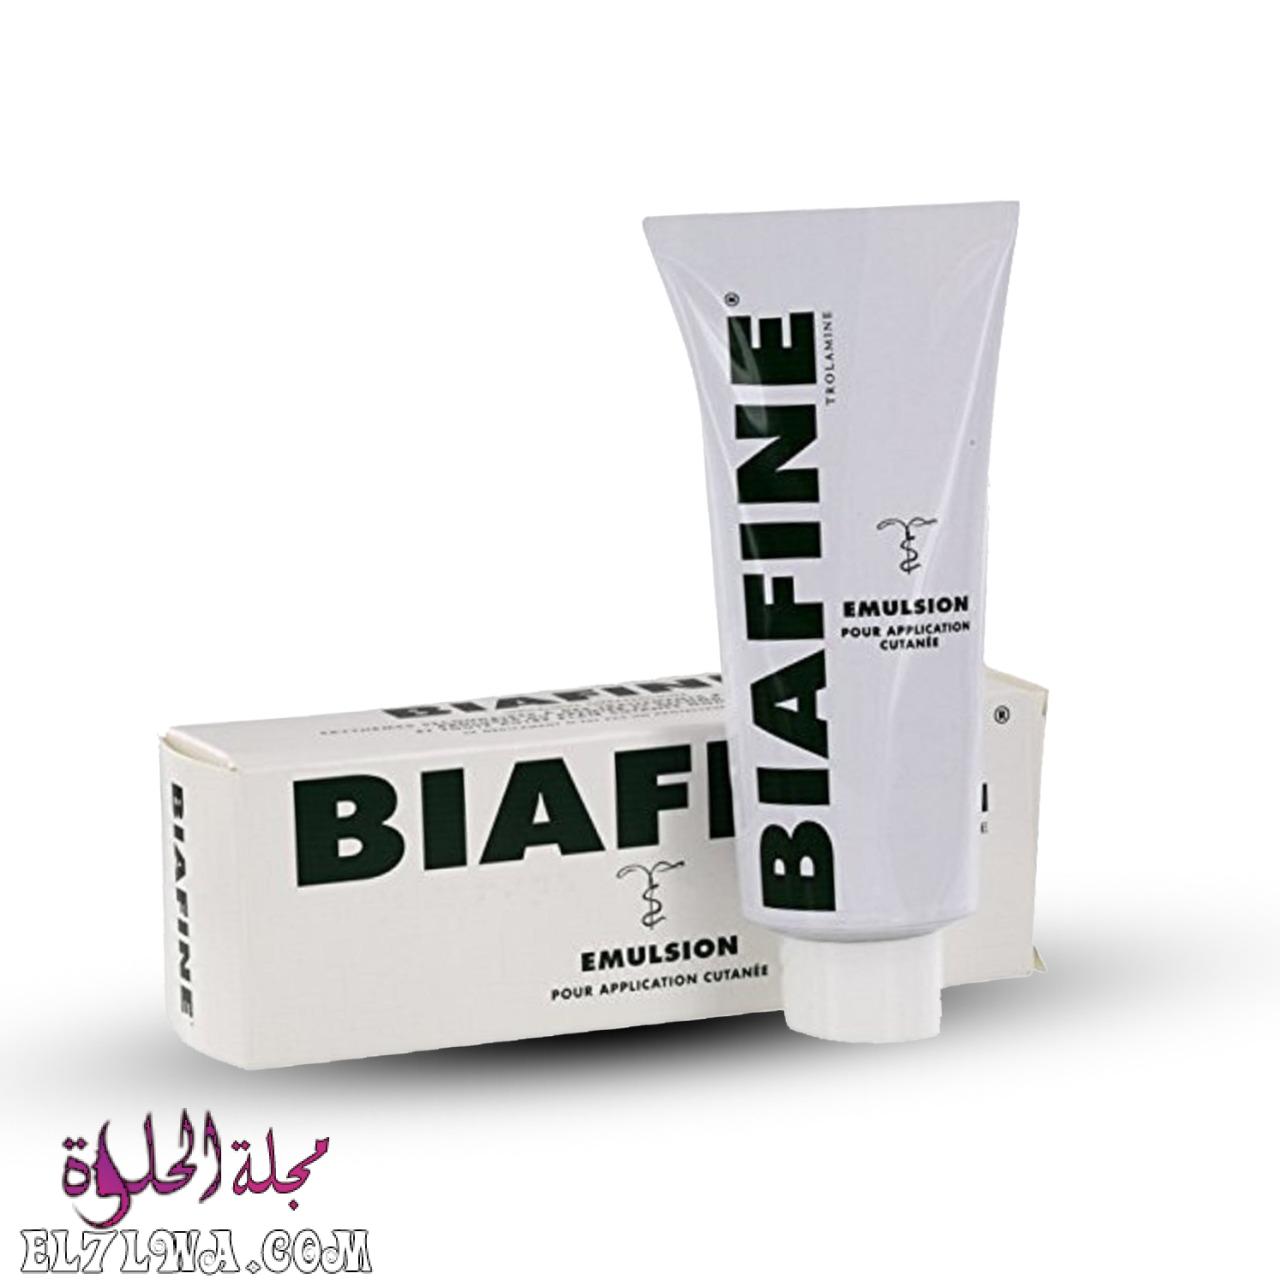 كريم بيافين Biafine Cream لتبيض الوجه والمناطق الحساسة